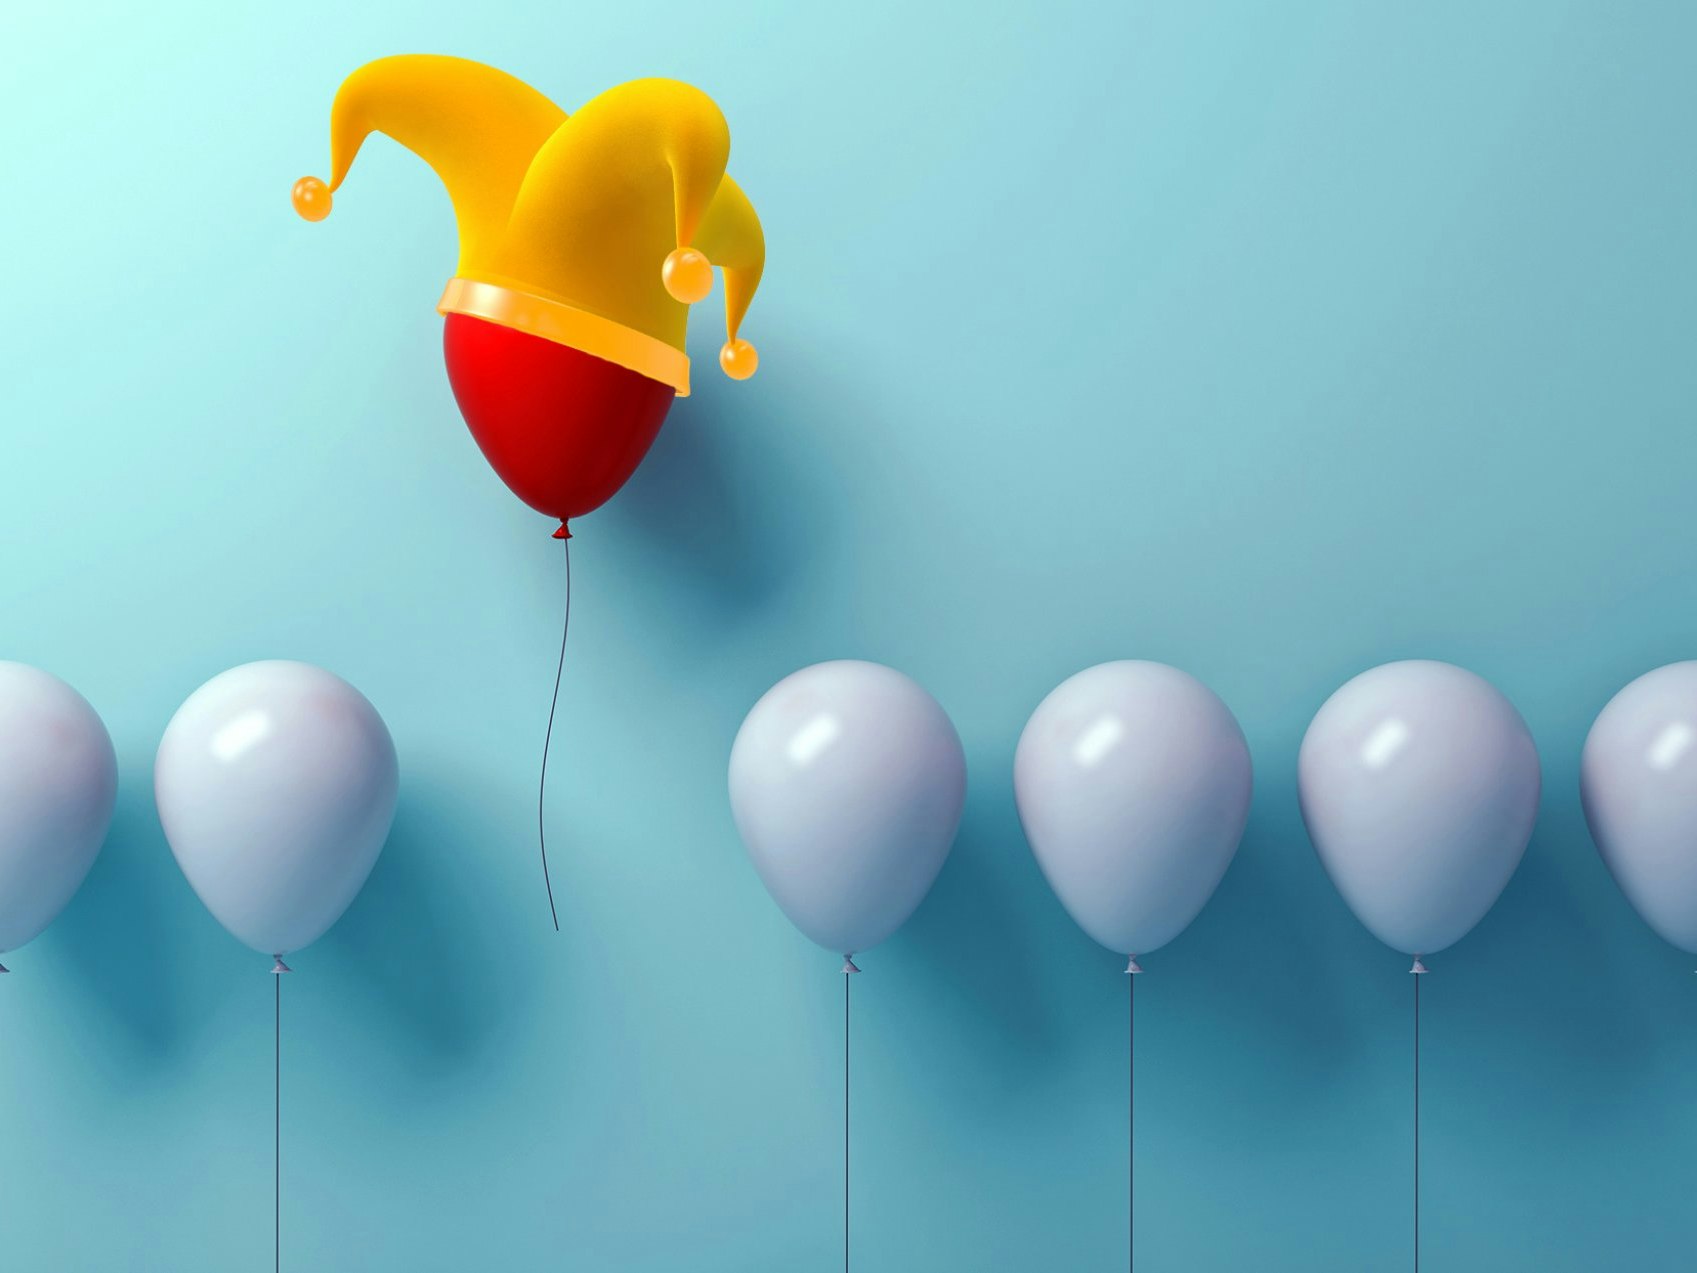 Illustrasjonsfoto: Rekke med lyseblå ballonger på blå bakgrunn; én rød ballong med jokerlue rykker fra de andre